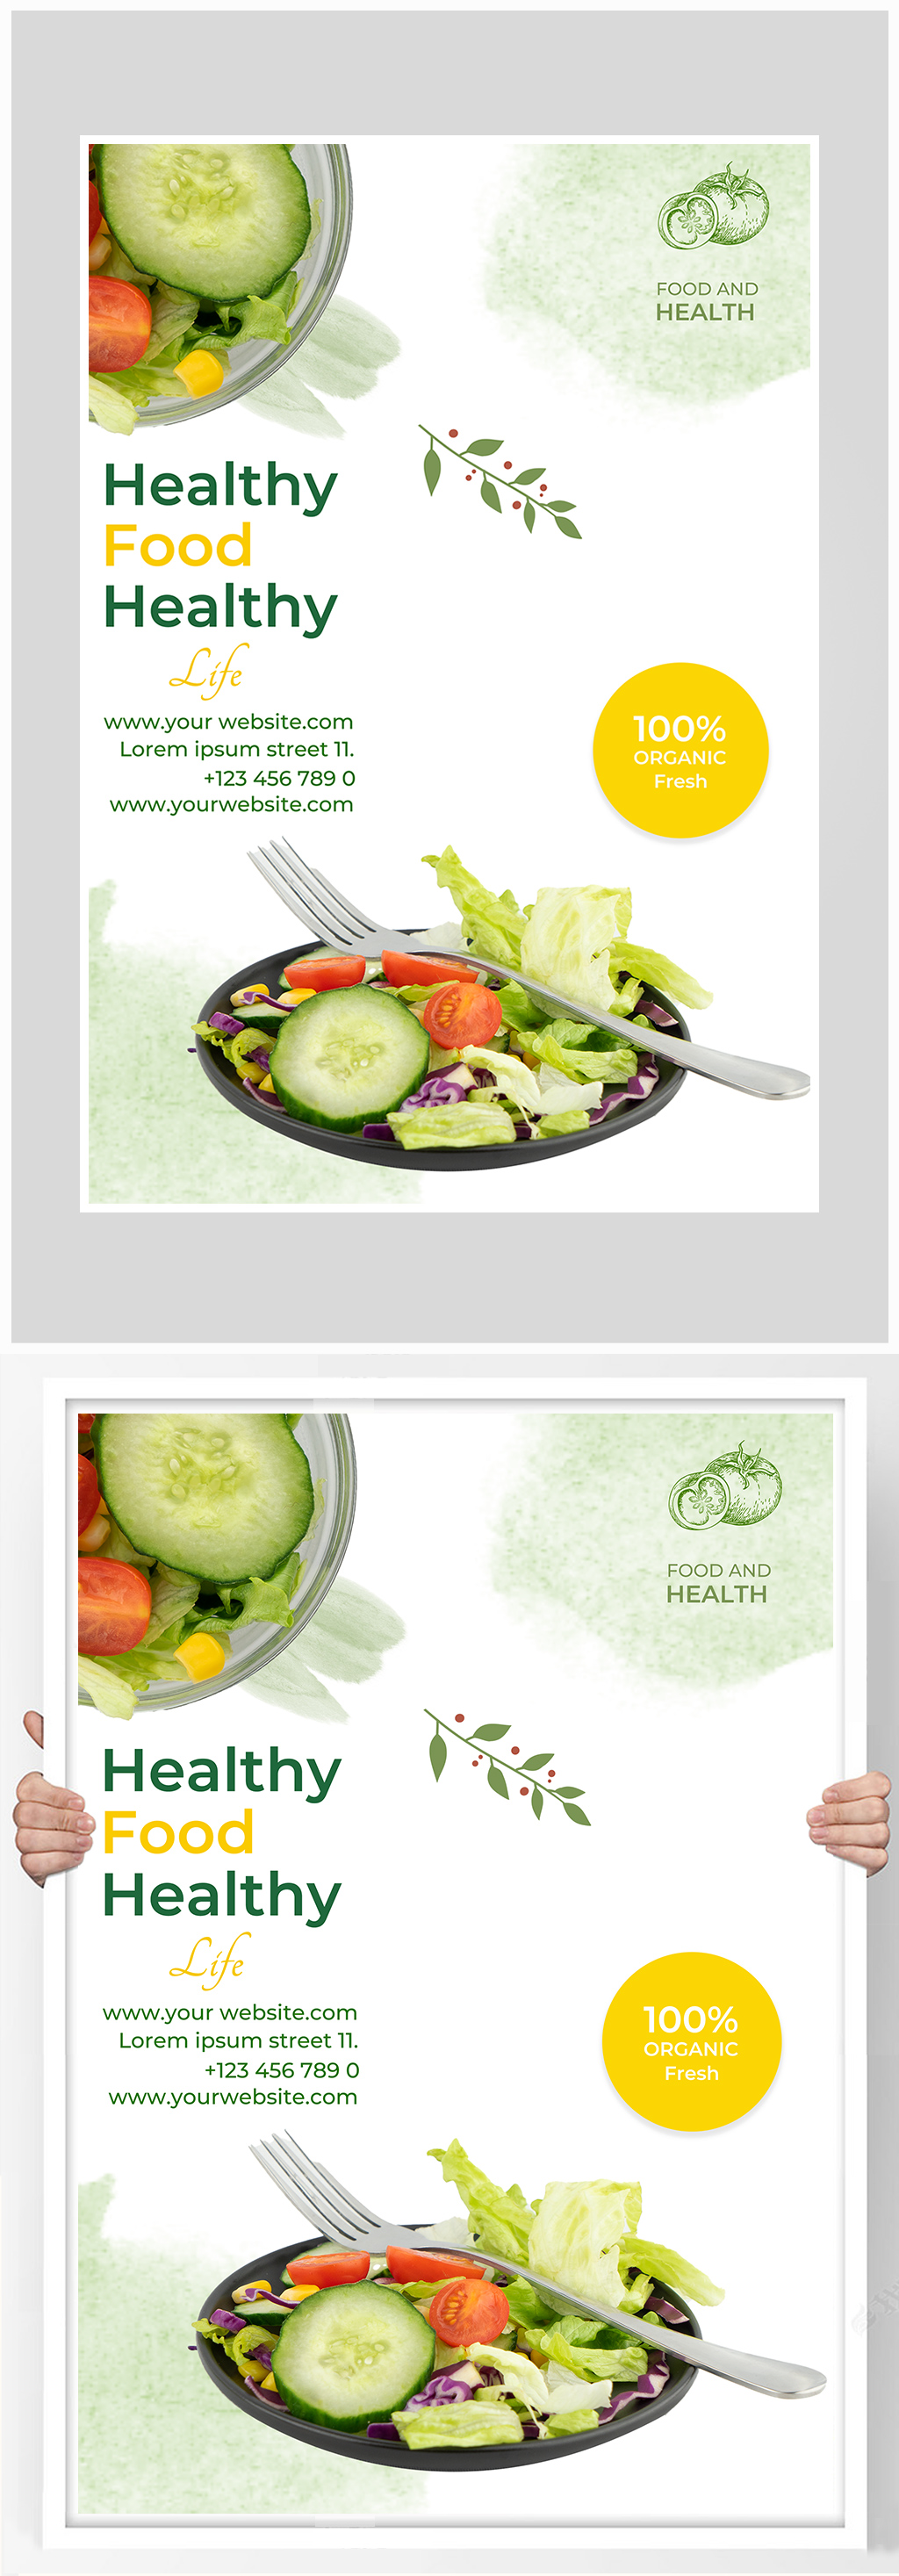 健康沙拉的宣传广告语图片